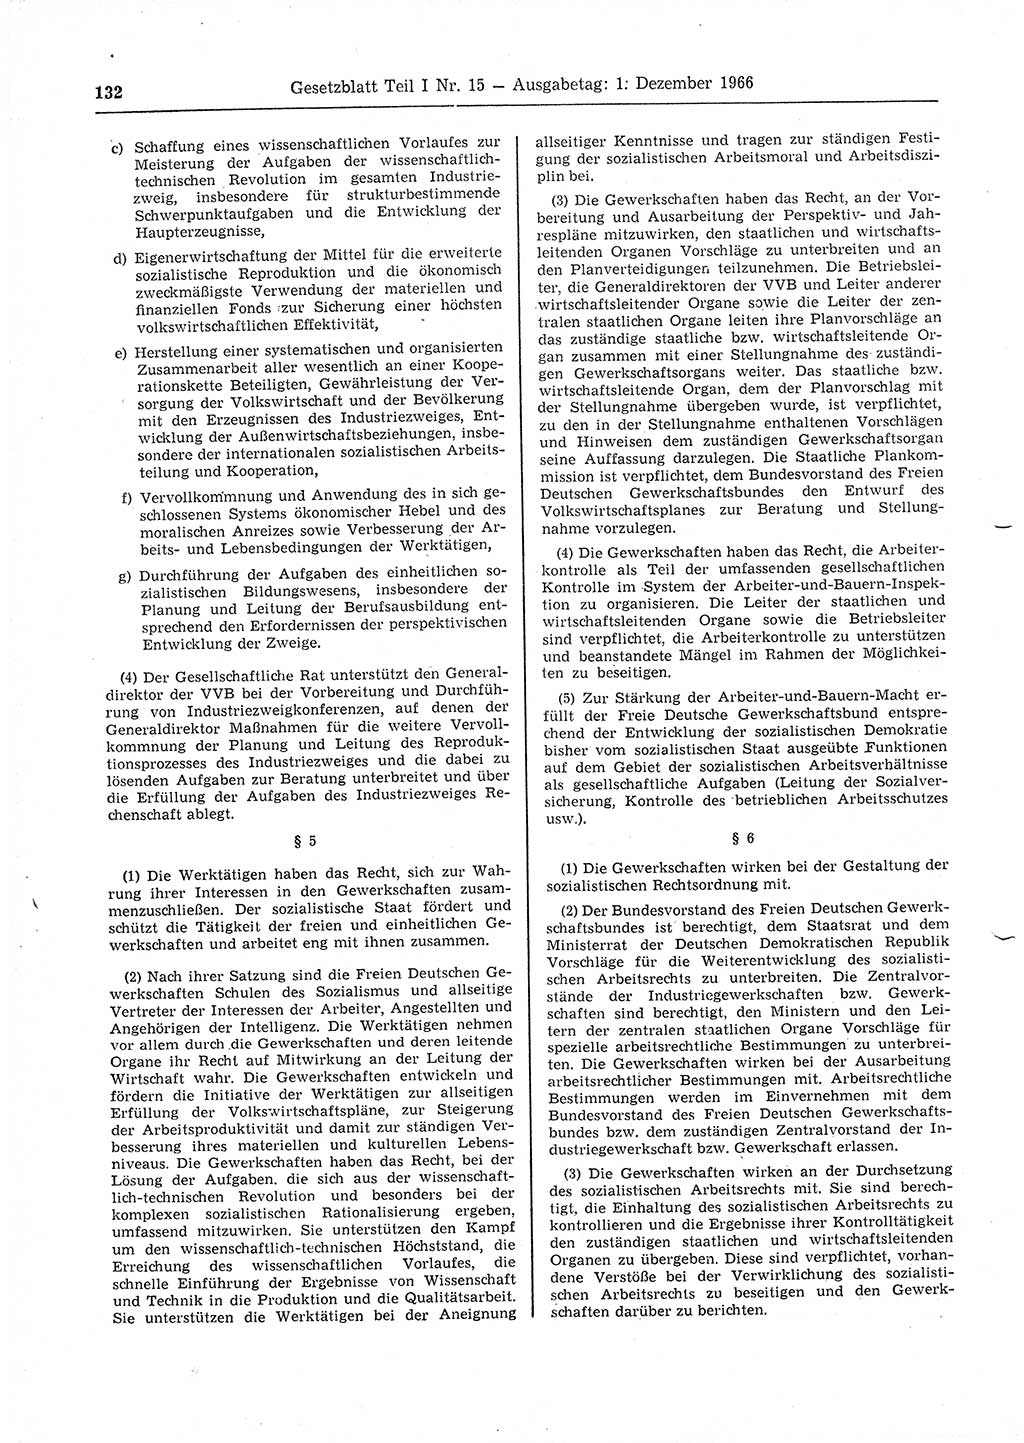 Gesetzblatt (GBl.) der Deutschen Demokratischen Republik (DDR) Teil Ⅰ 1966, Seite 132 (GBl. DDR Ⅰ 1966, S. 132)